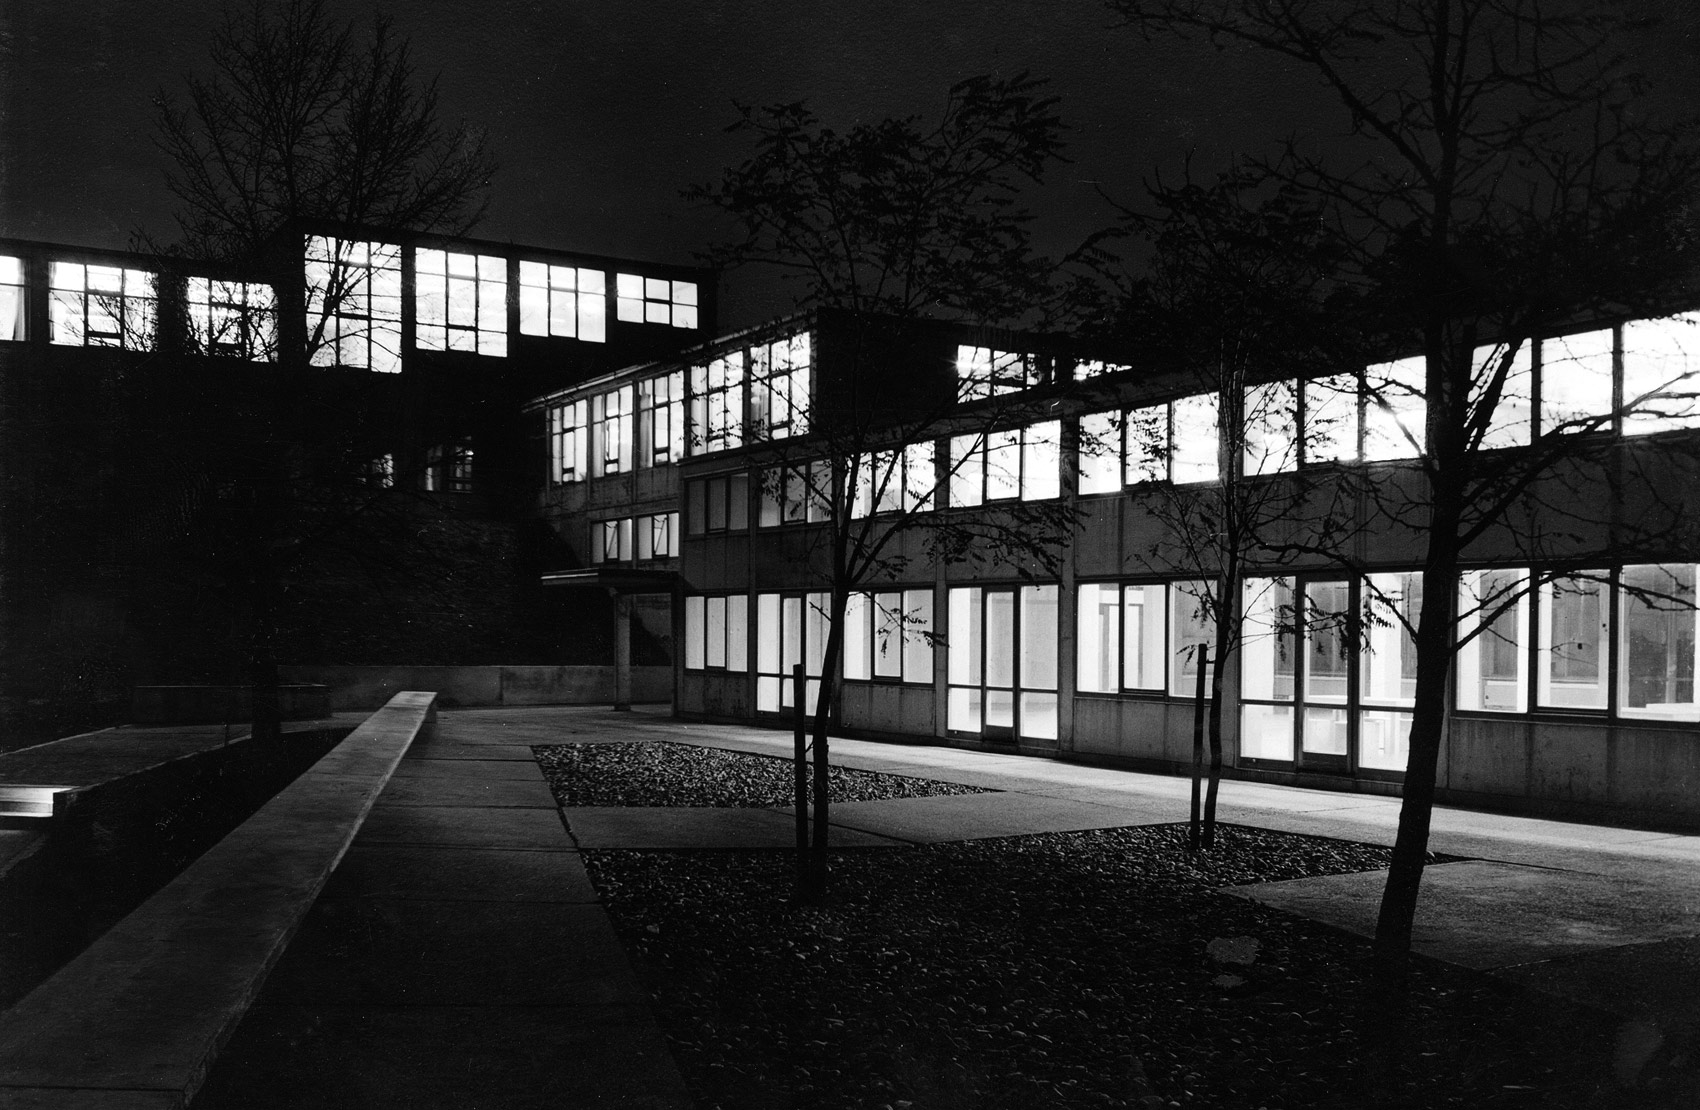 Nachtaufnahme des HfG-Gebäudes, 1956